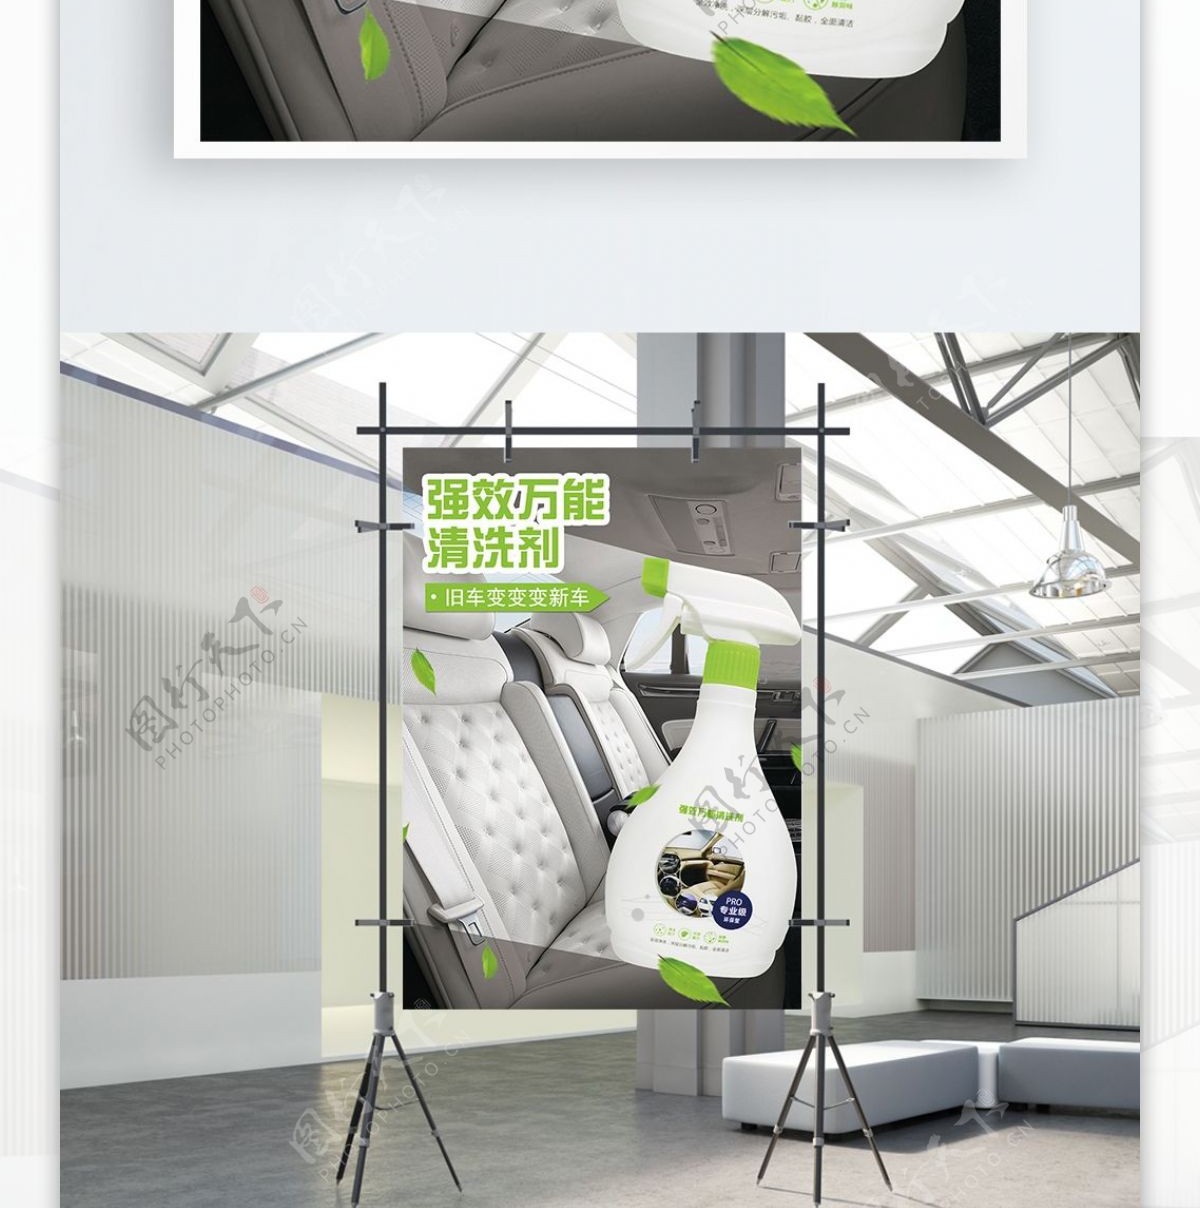 绿色清洗剂促销喷绘海报设计PSD模板